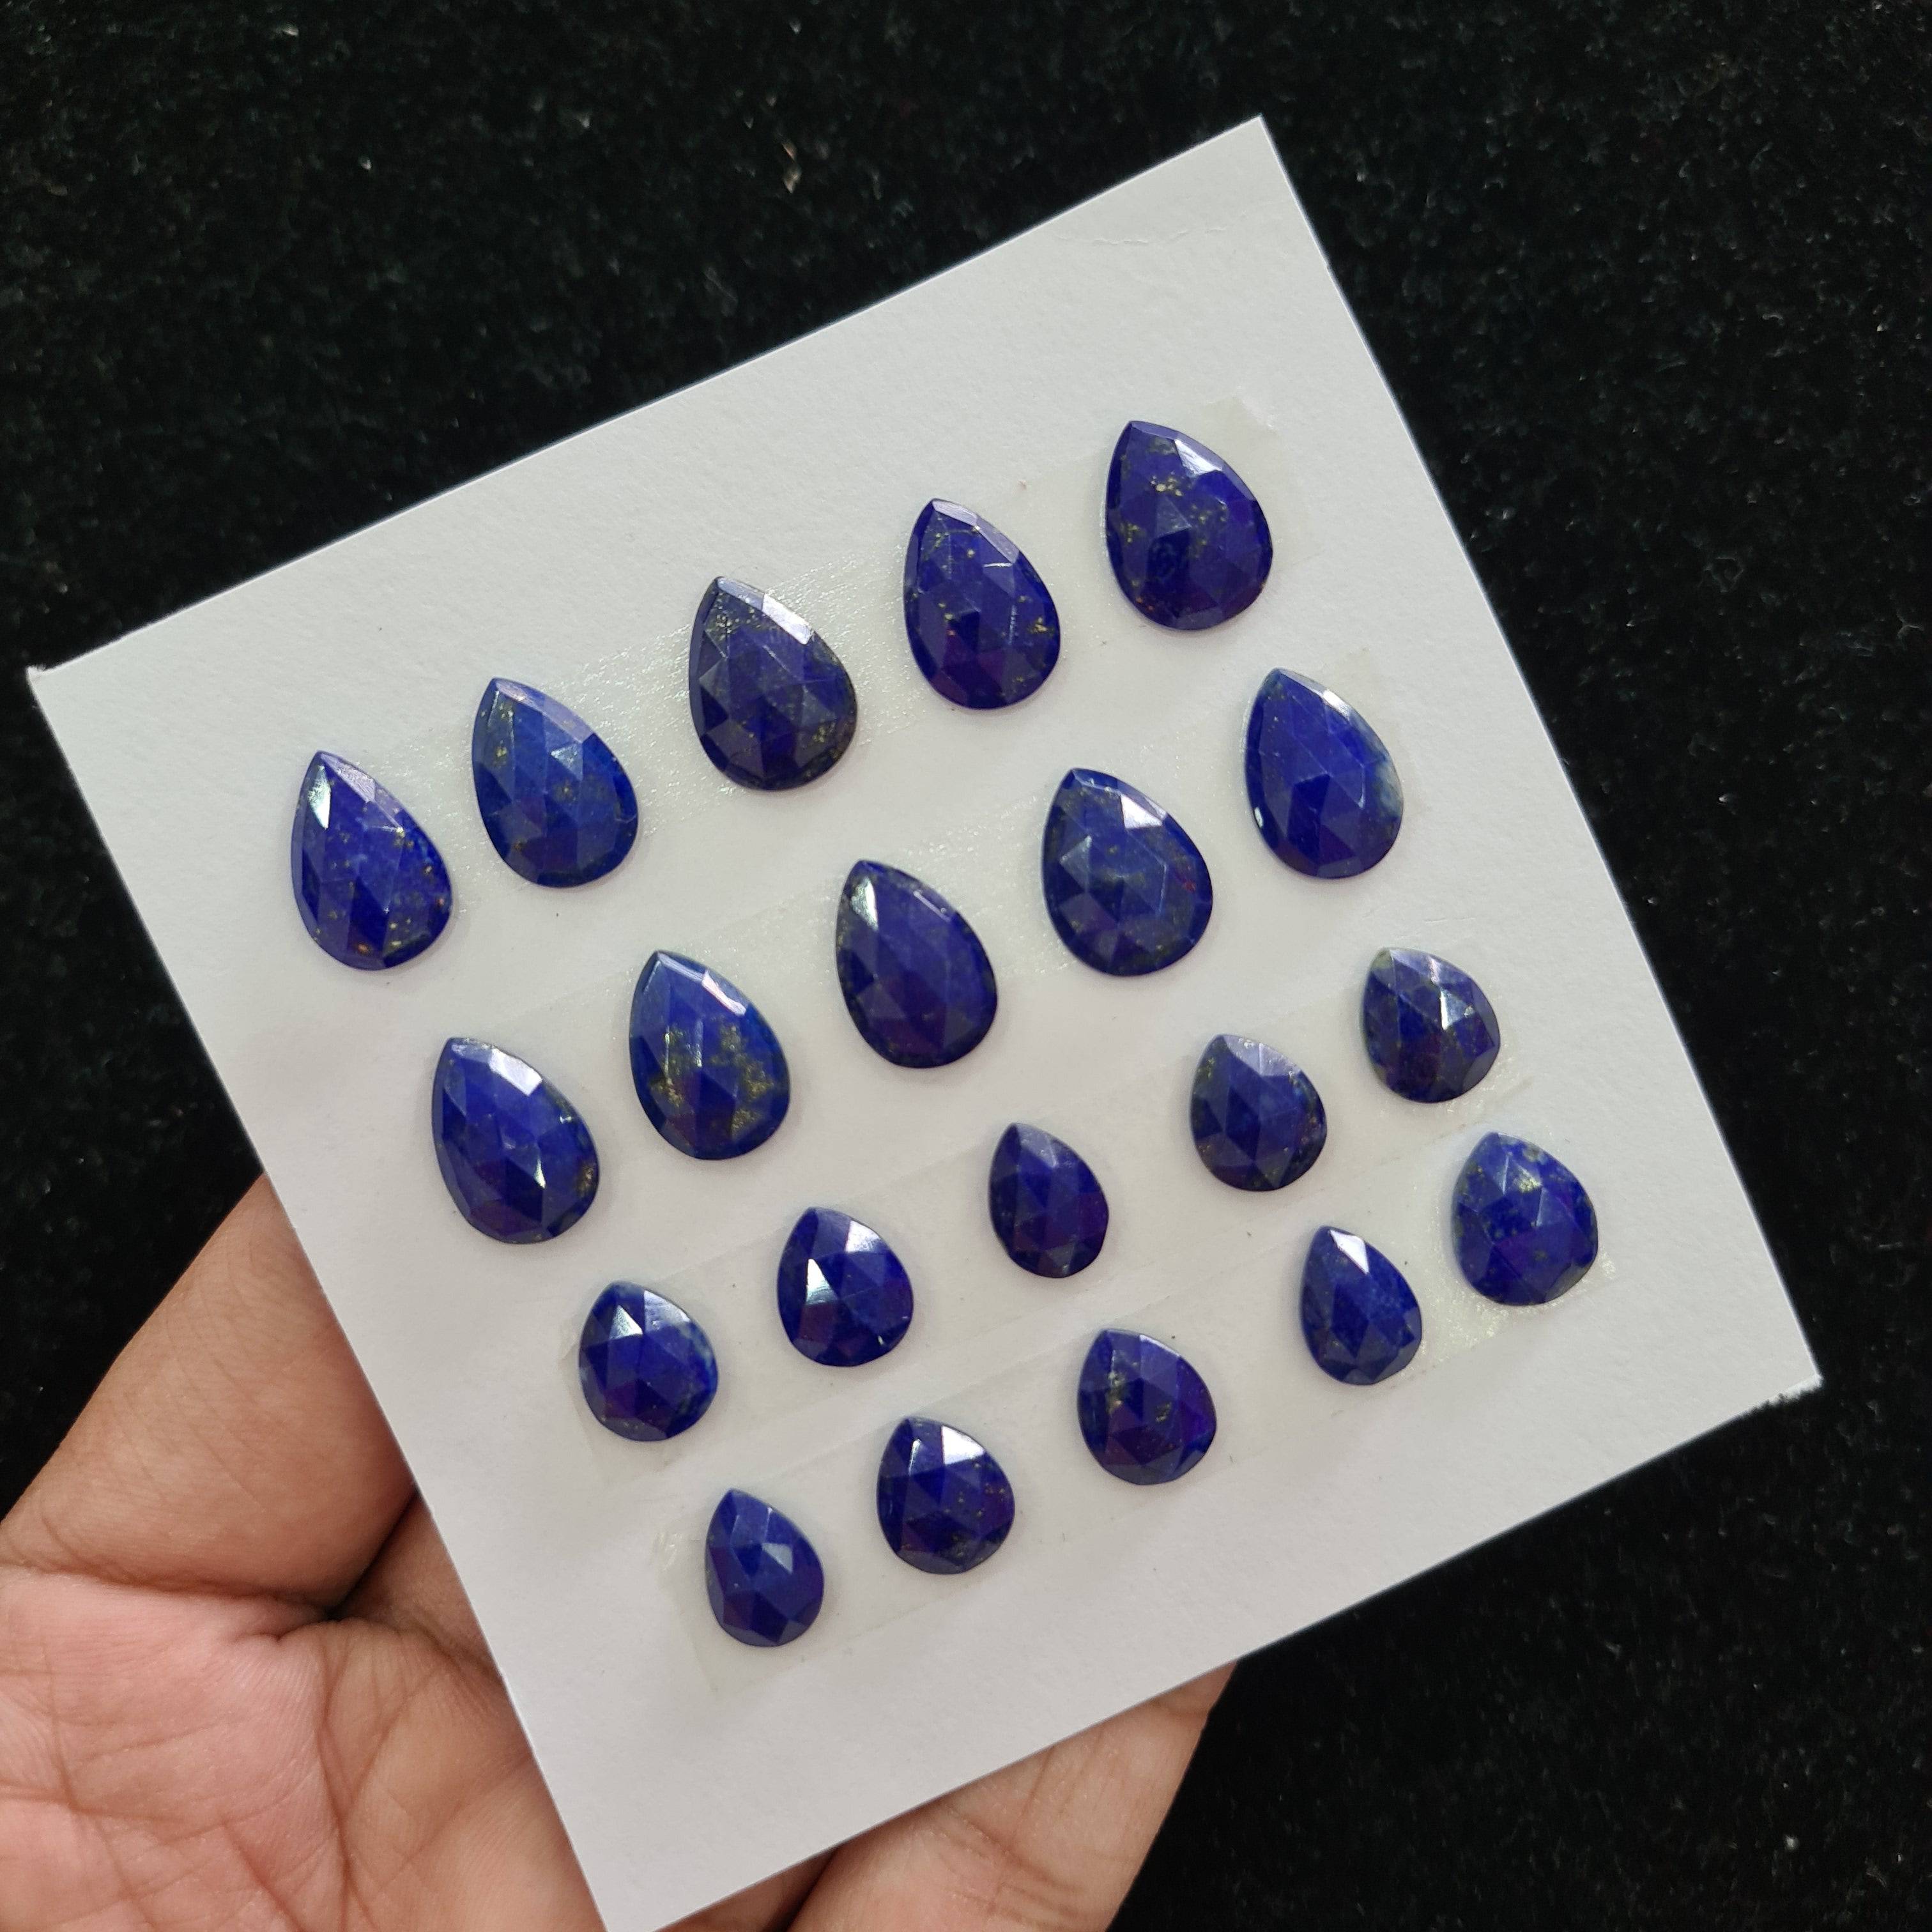 20 Pcs Natural Lapis Lazuli Rosecut Gemstones | Pear Shape, 11-15mm Size, - The LabradoriteKing